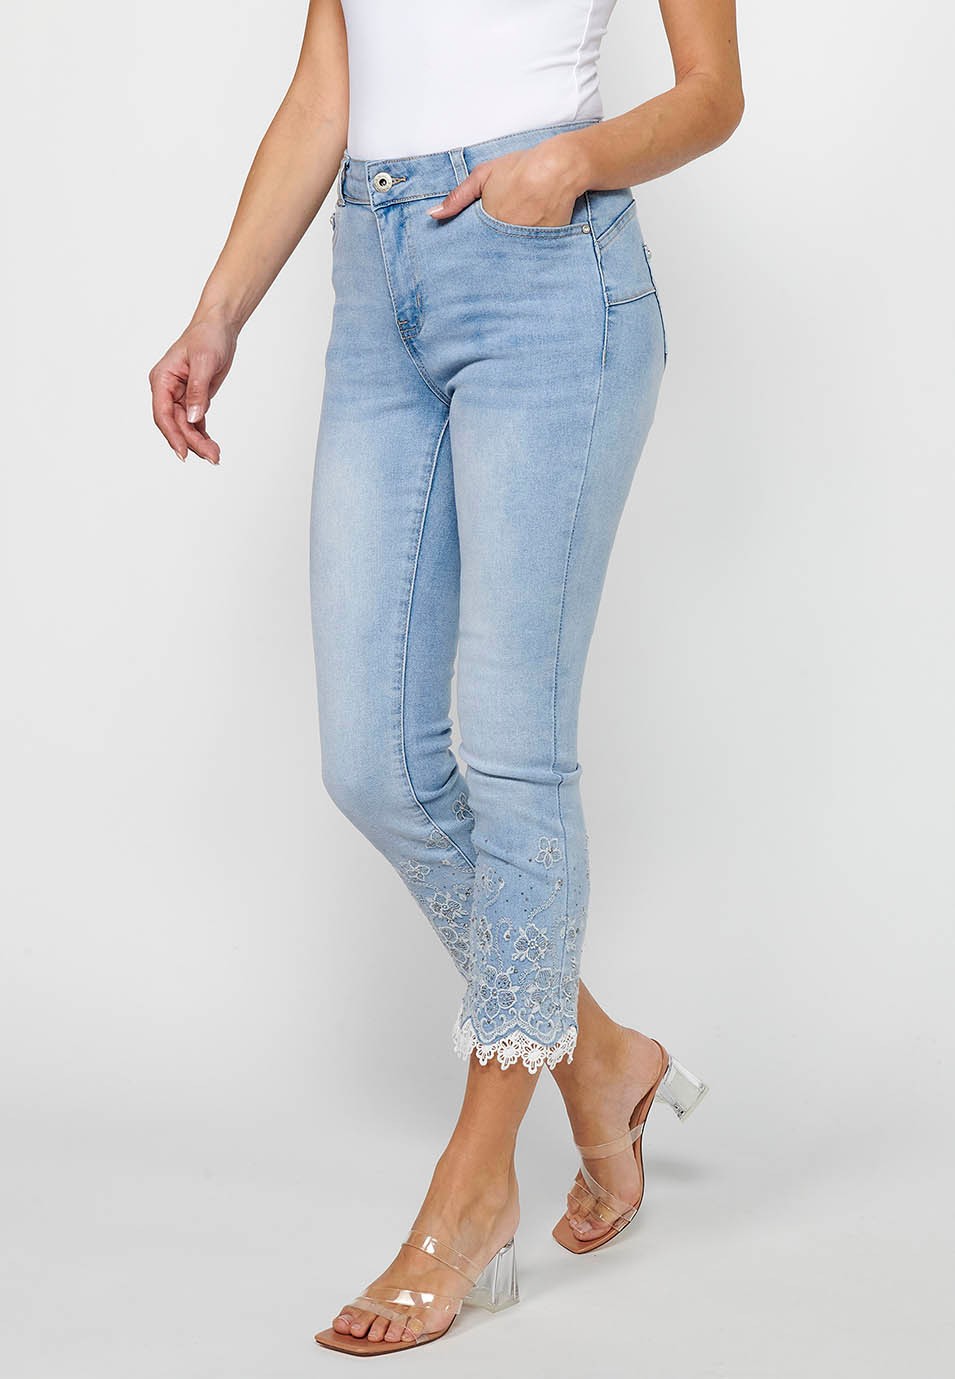 Pantalon long en jean slim avec fermeture éclair sur le devant et détails brodés de fleurs bleu clair pour femme 4